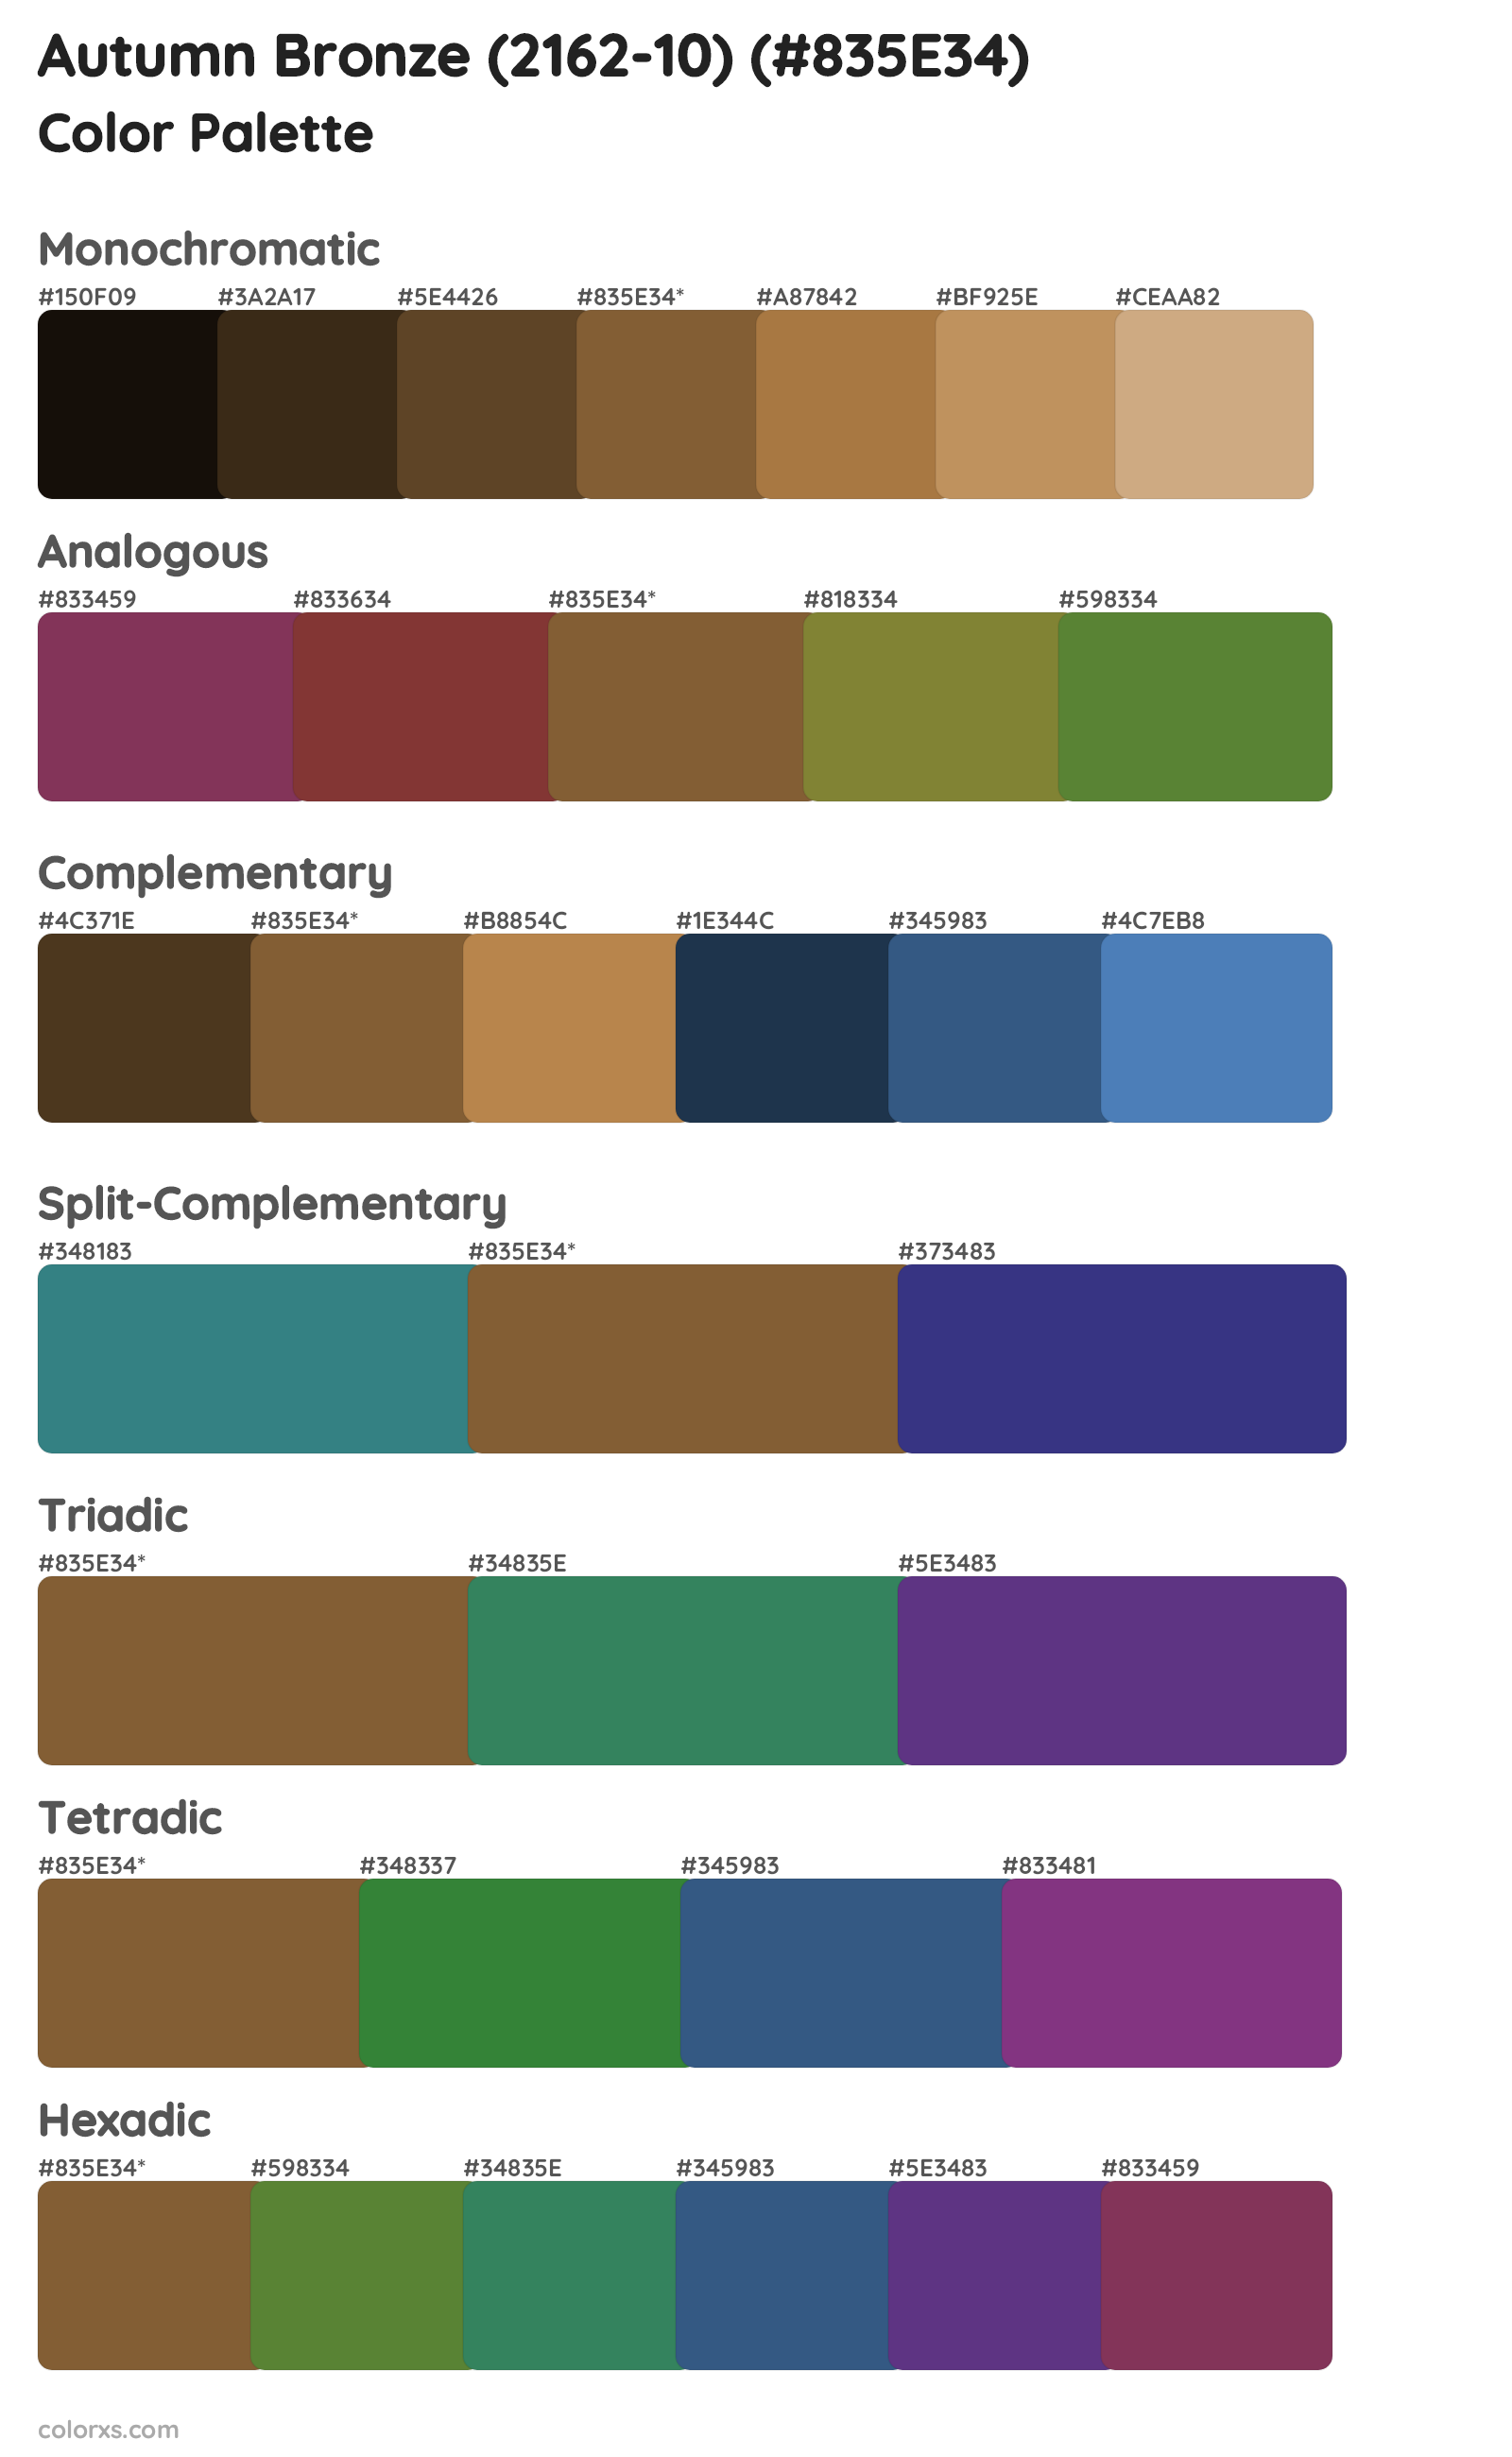 Autumn Bronze (2162-10) Color Scheme Palettes